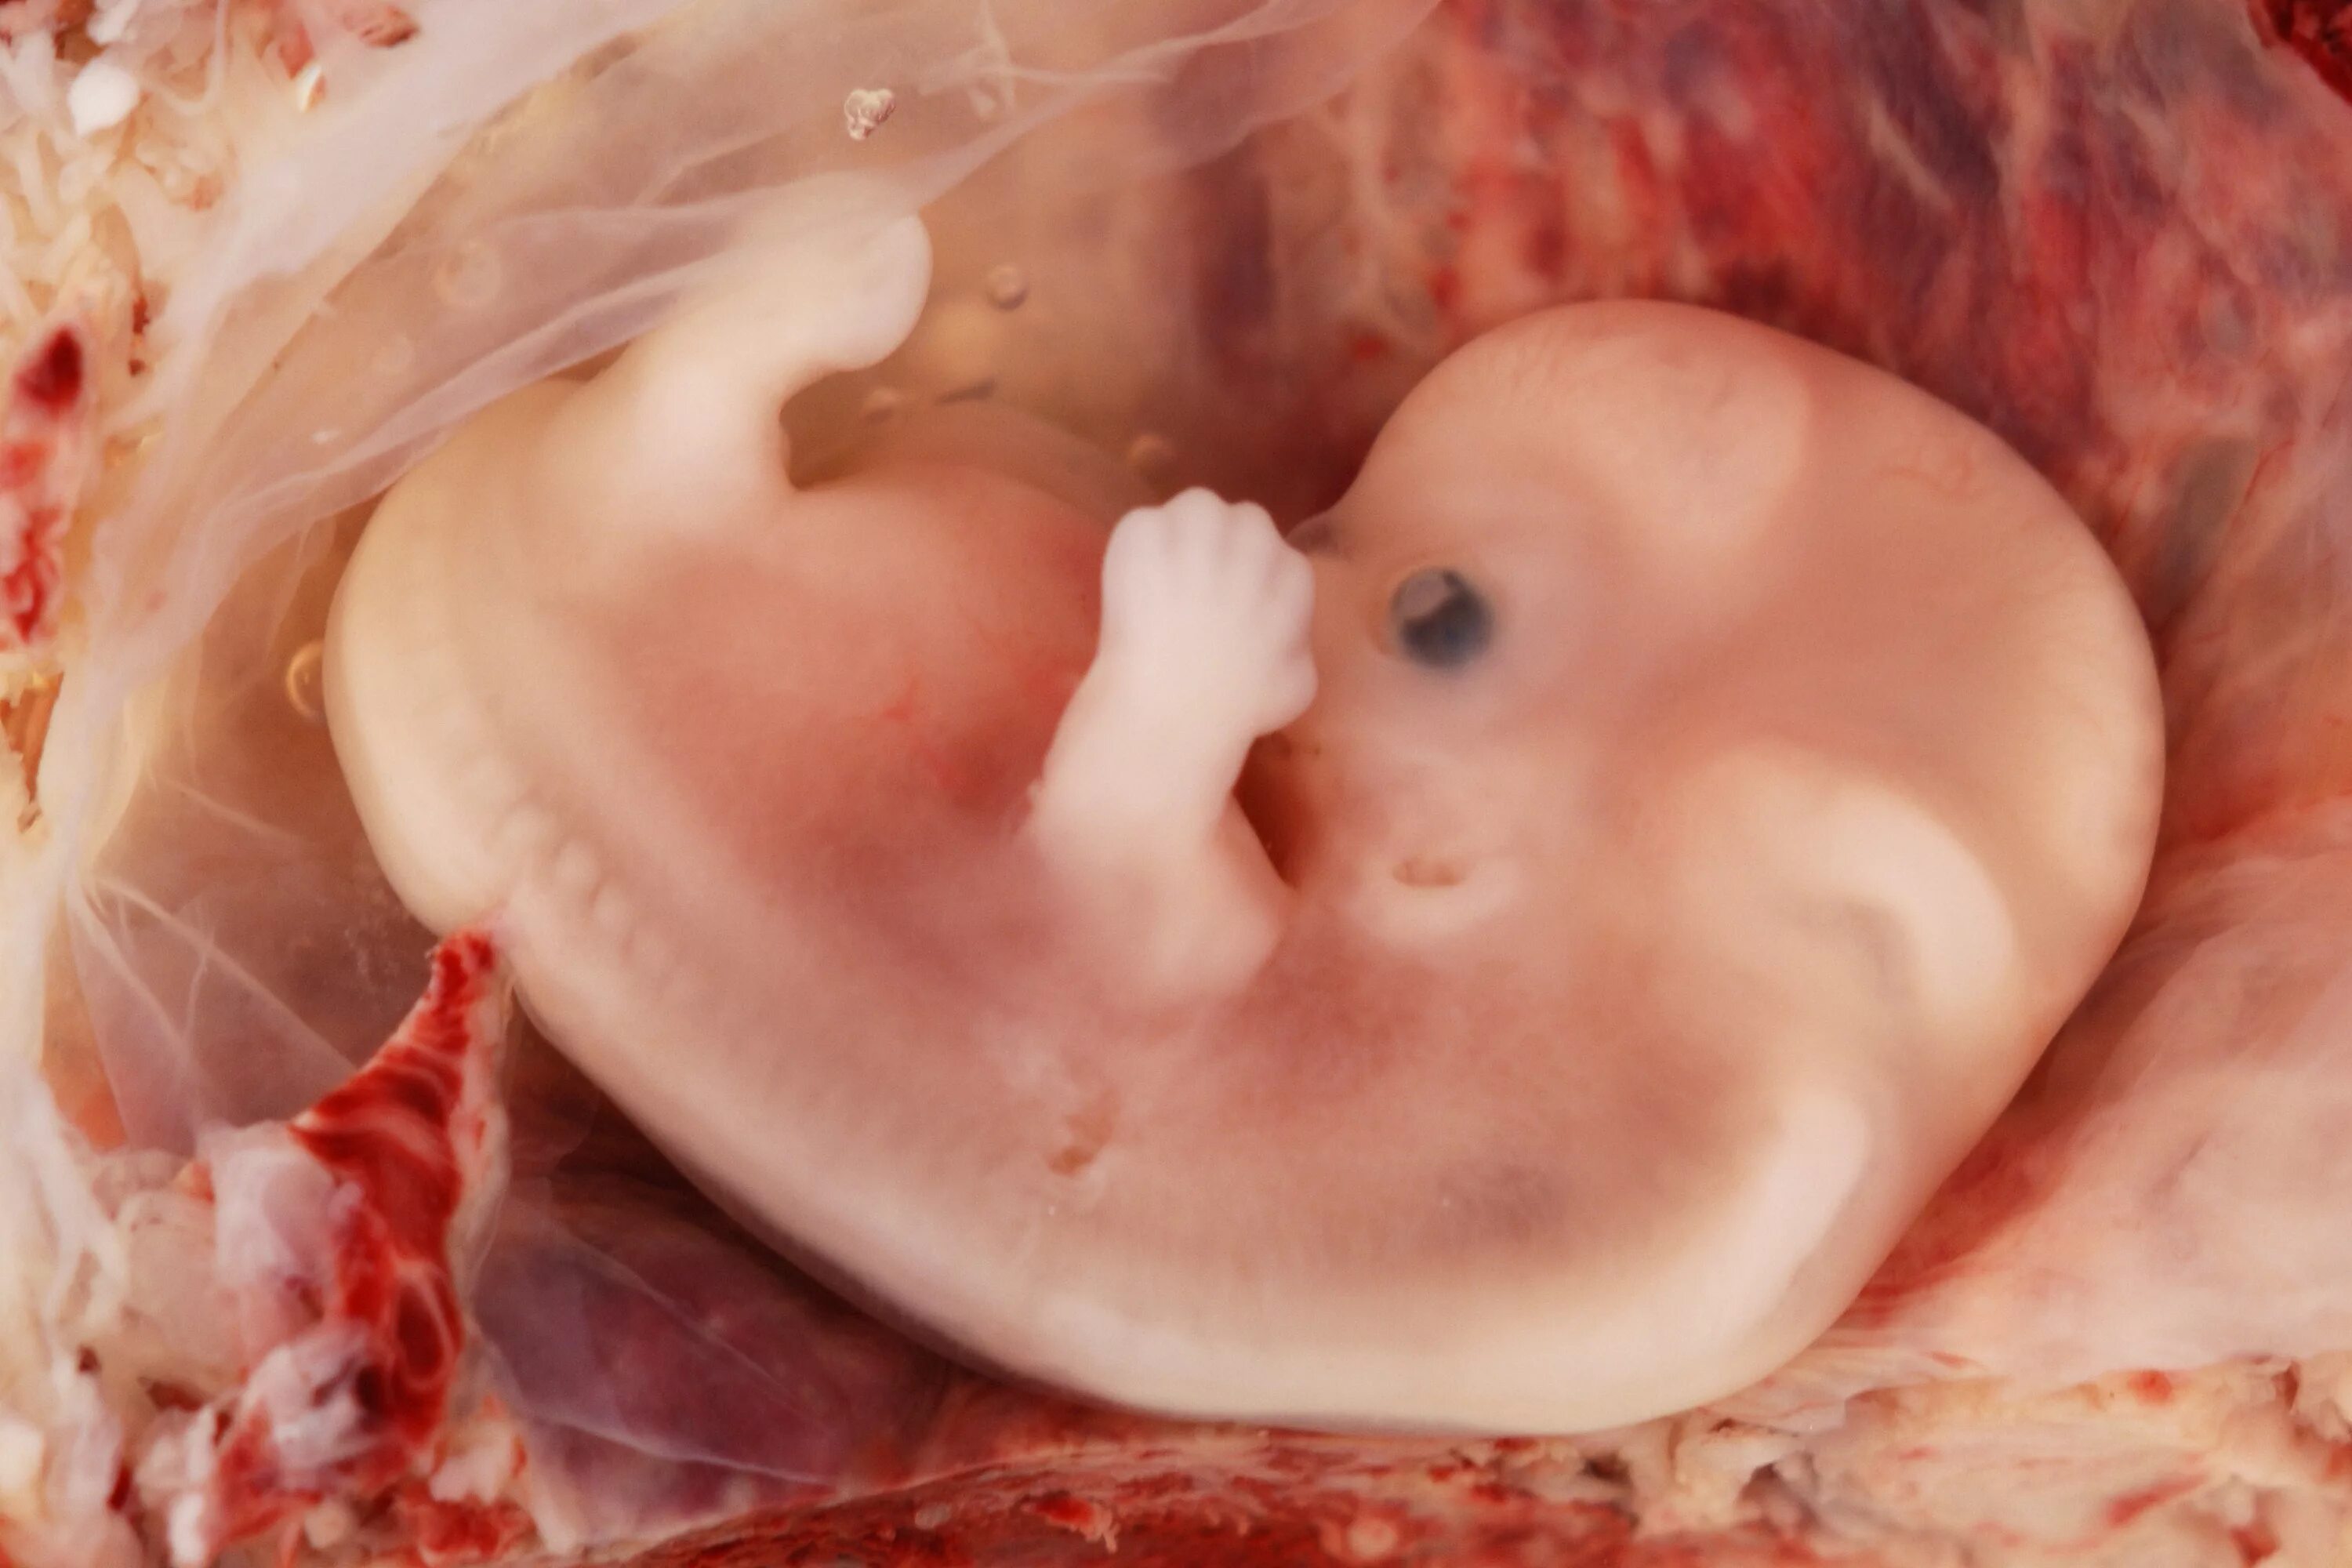 Эмбрион на 8 неделе беременности. Фото 8 недель беременности фото плода. Плод на 8 неделе беременности. Выпила в 8 недель